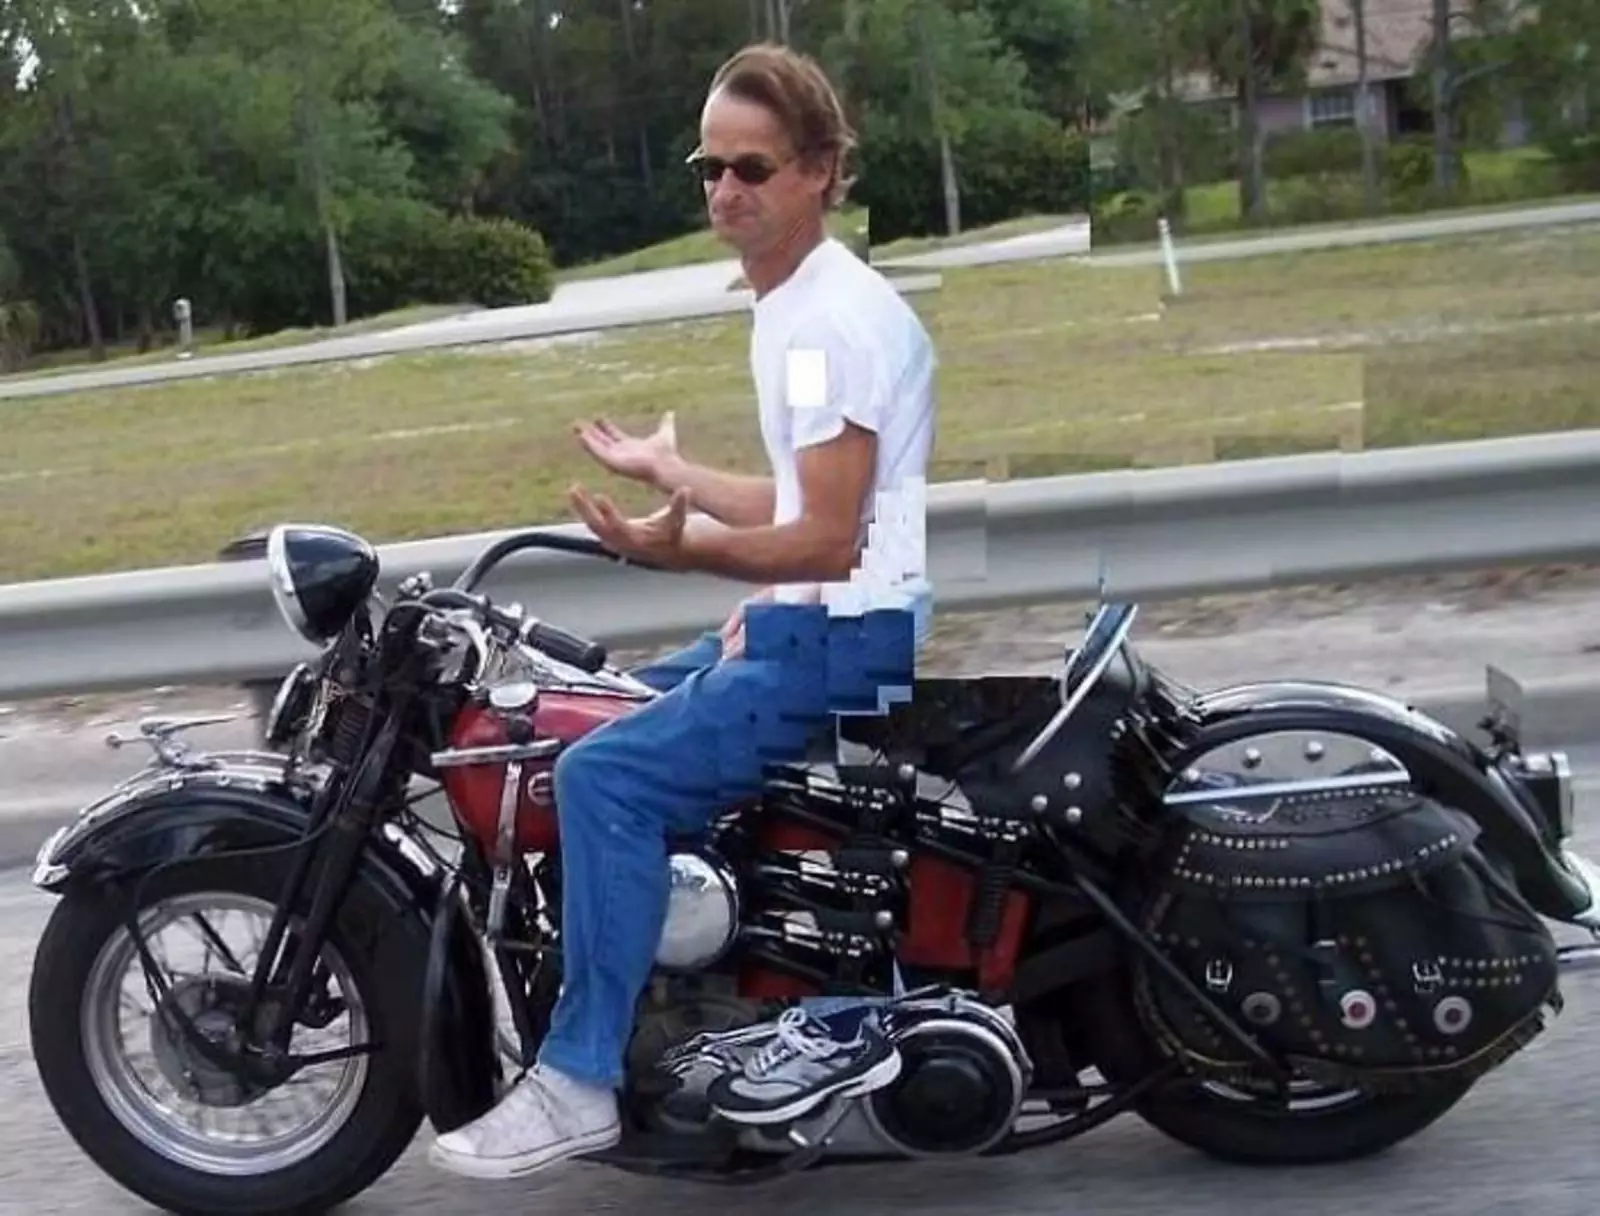 Мужчина удалил с фото свою бывшую жену, сидящую сзади него на мотоцикле.